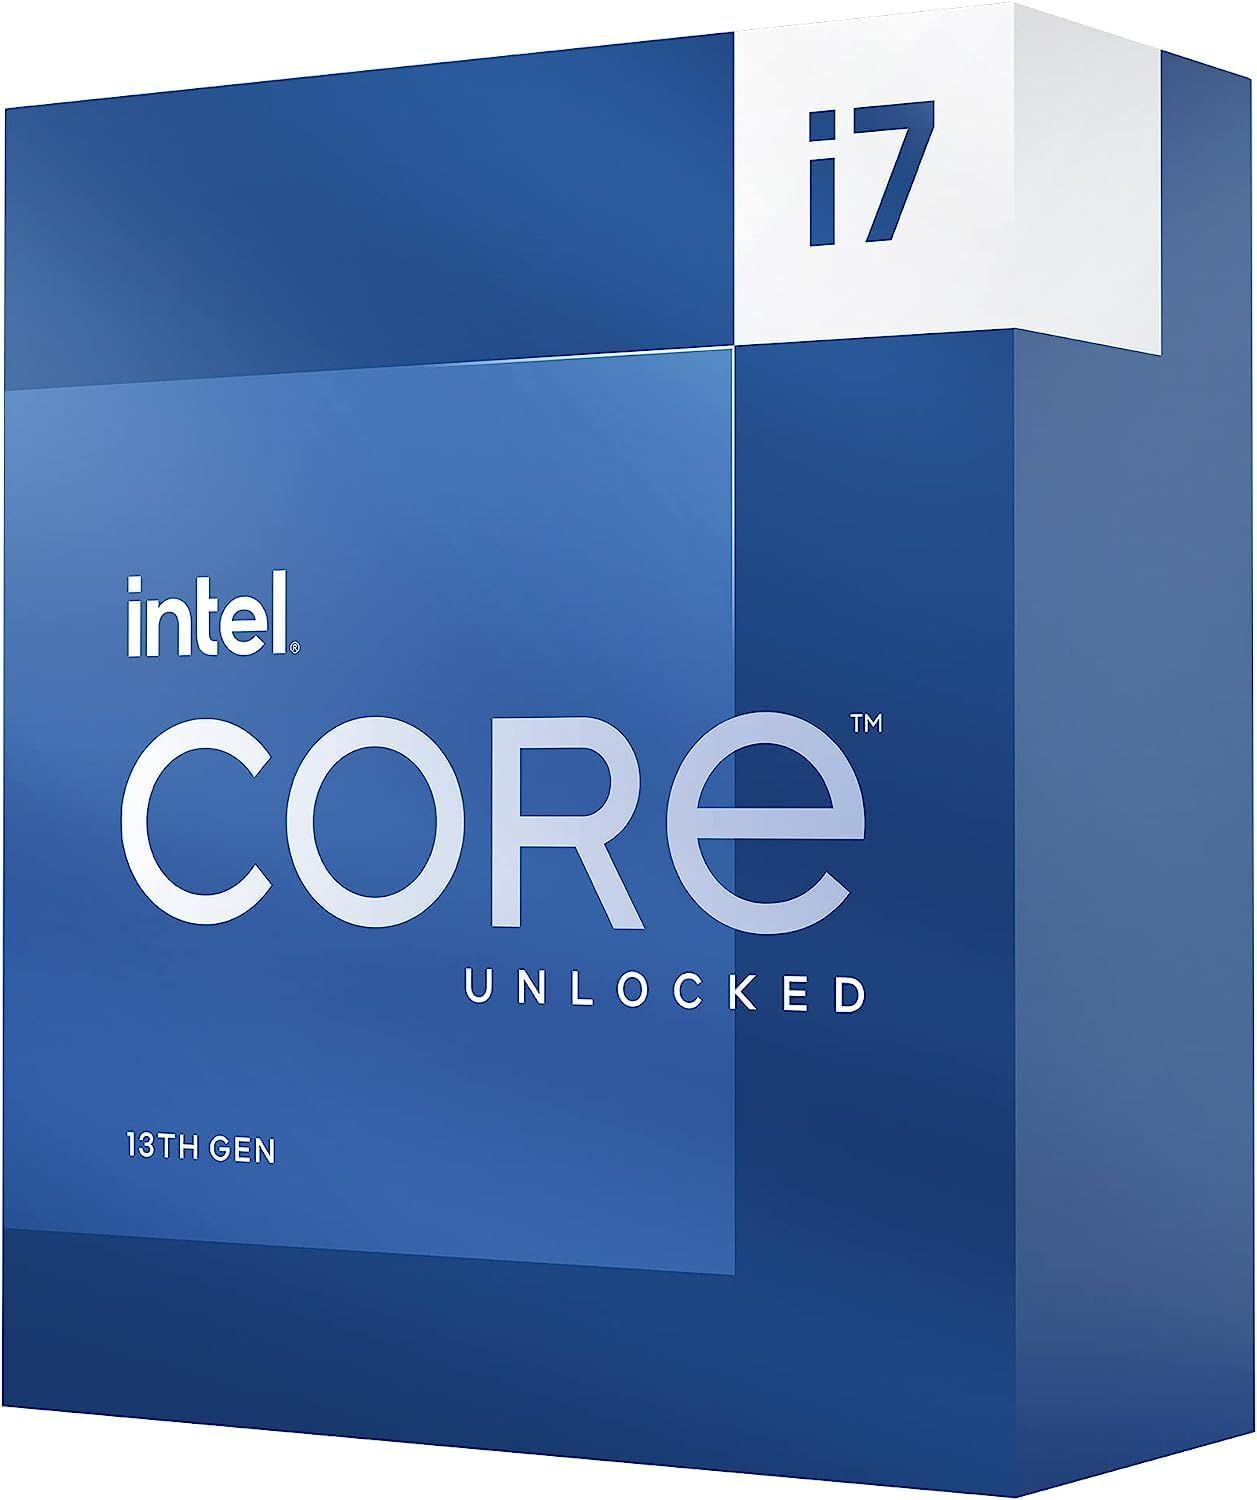 Intel Core i7-13700K Gaming Desktop Processor